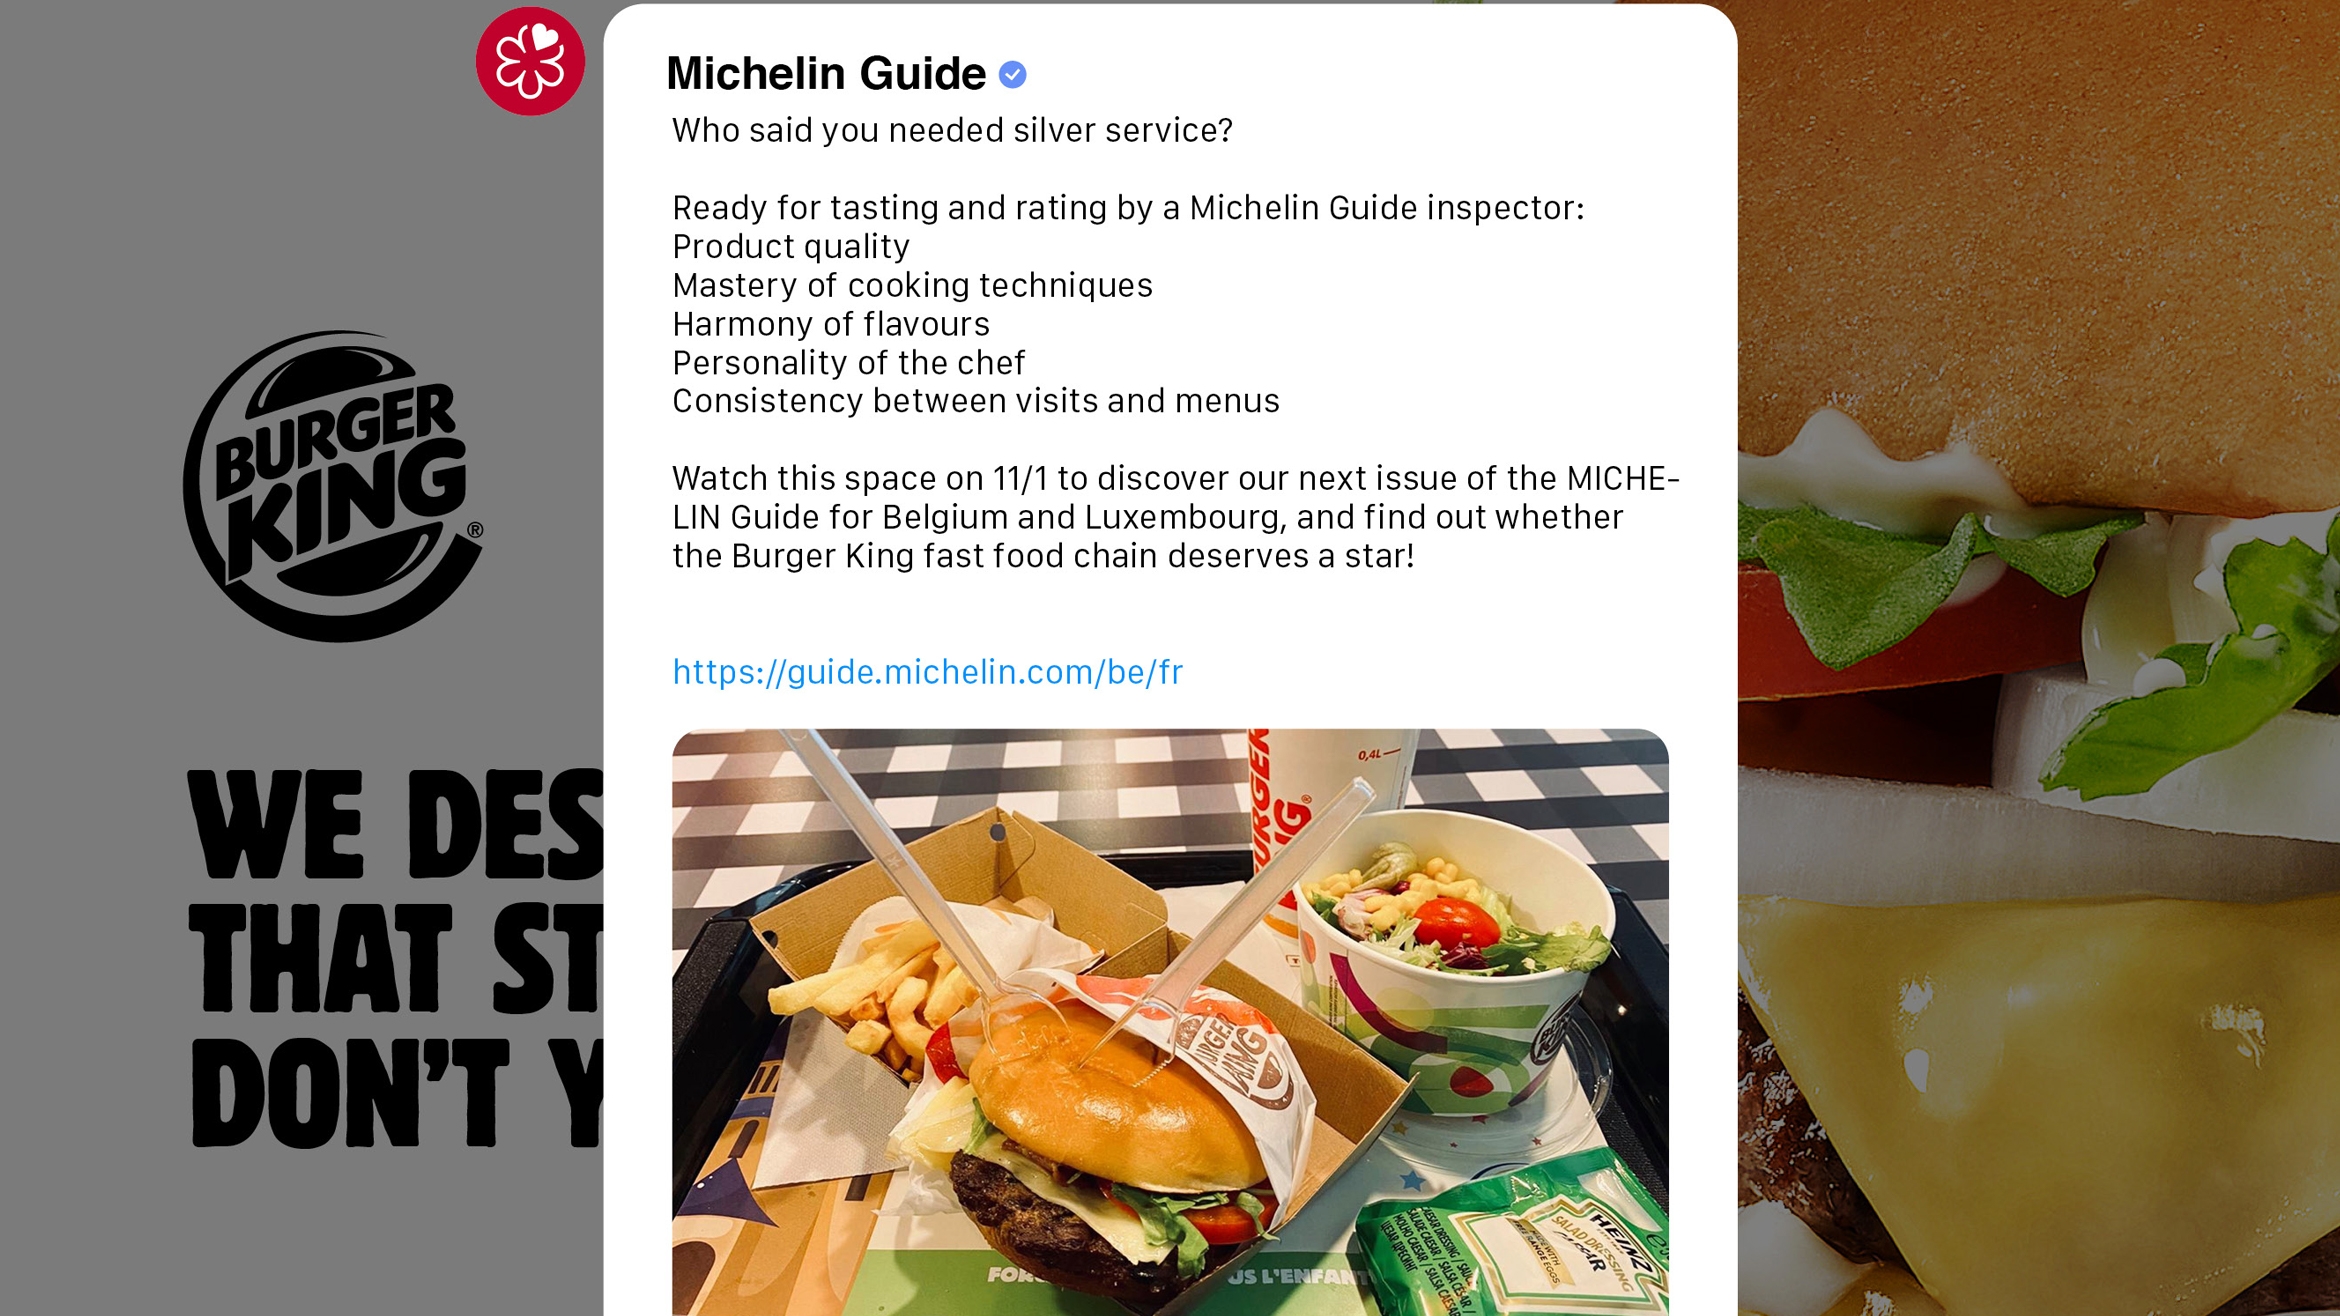 In einem offenen Brief an den Michelin Guide bewirbt sich Burger King um einen der begehrten Gourmet-Sterne –